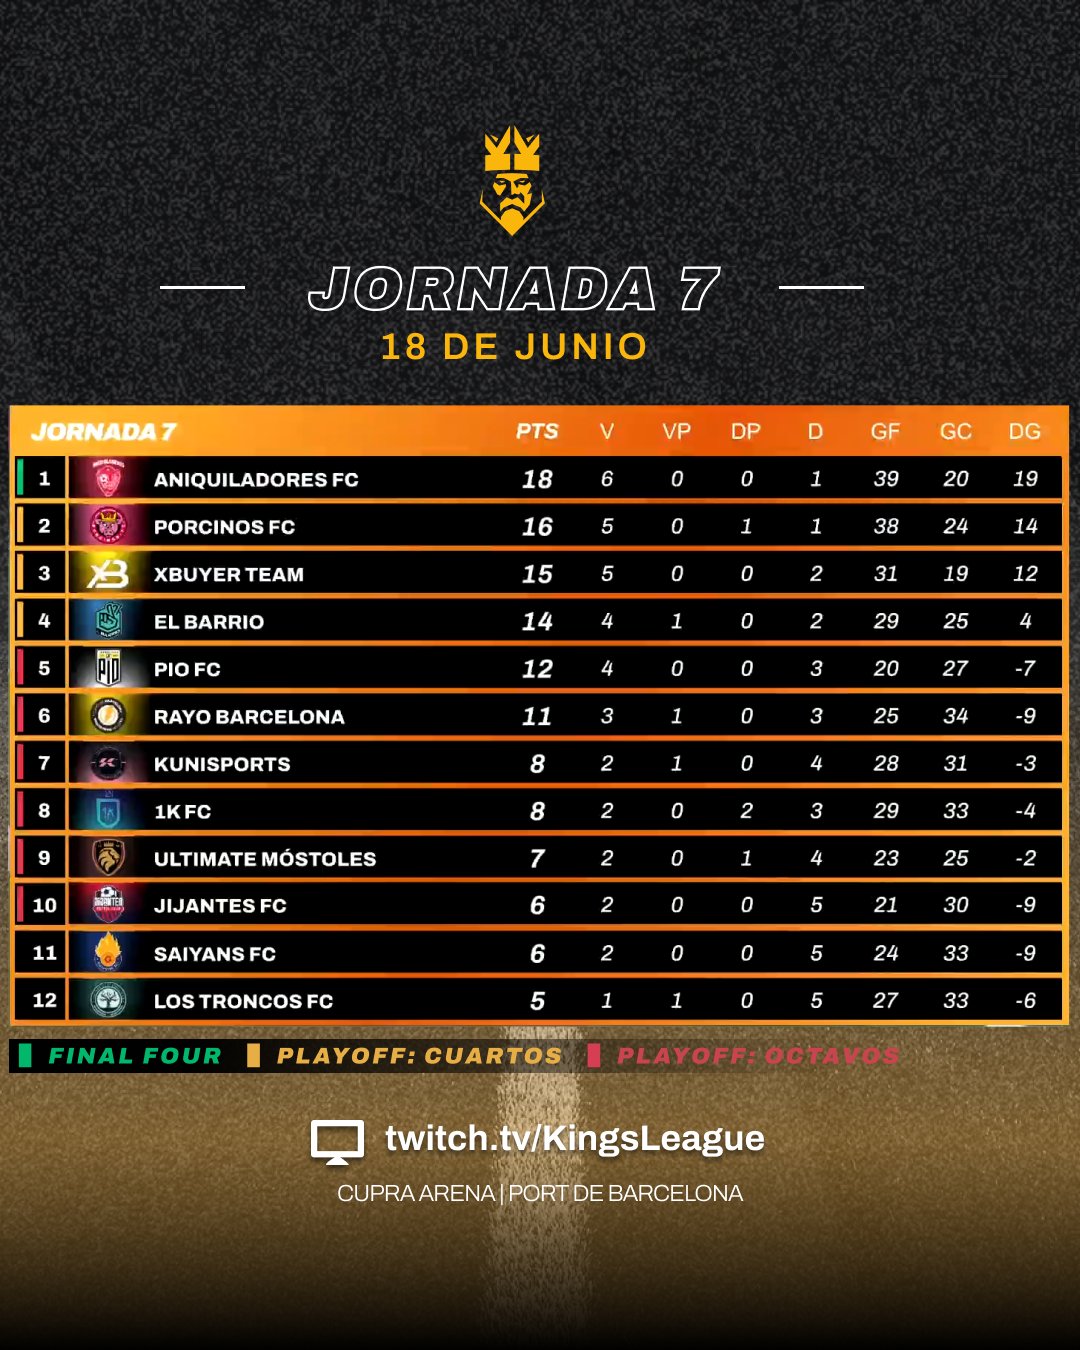 Jornada 7 kings league split 2